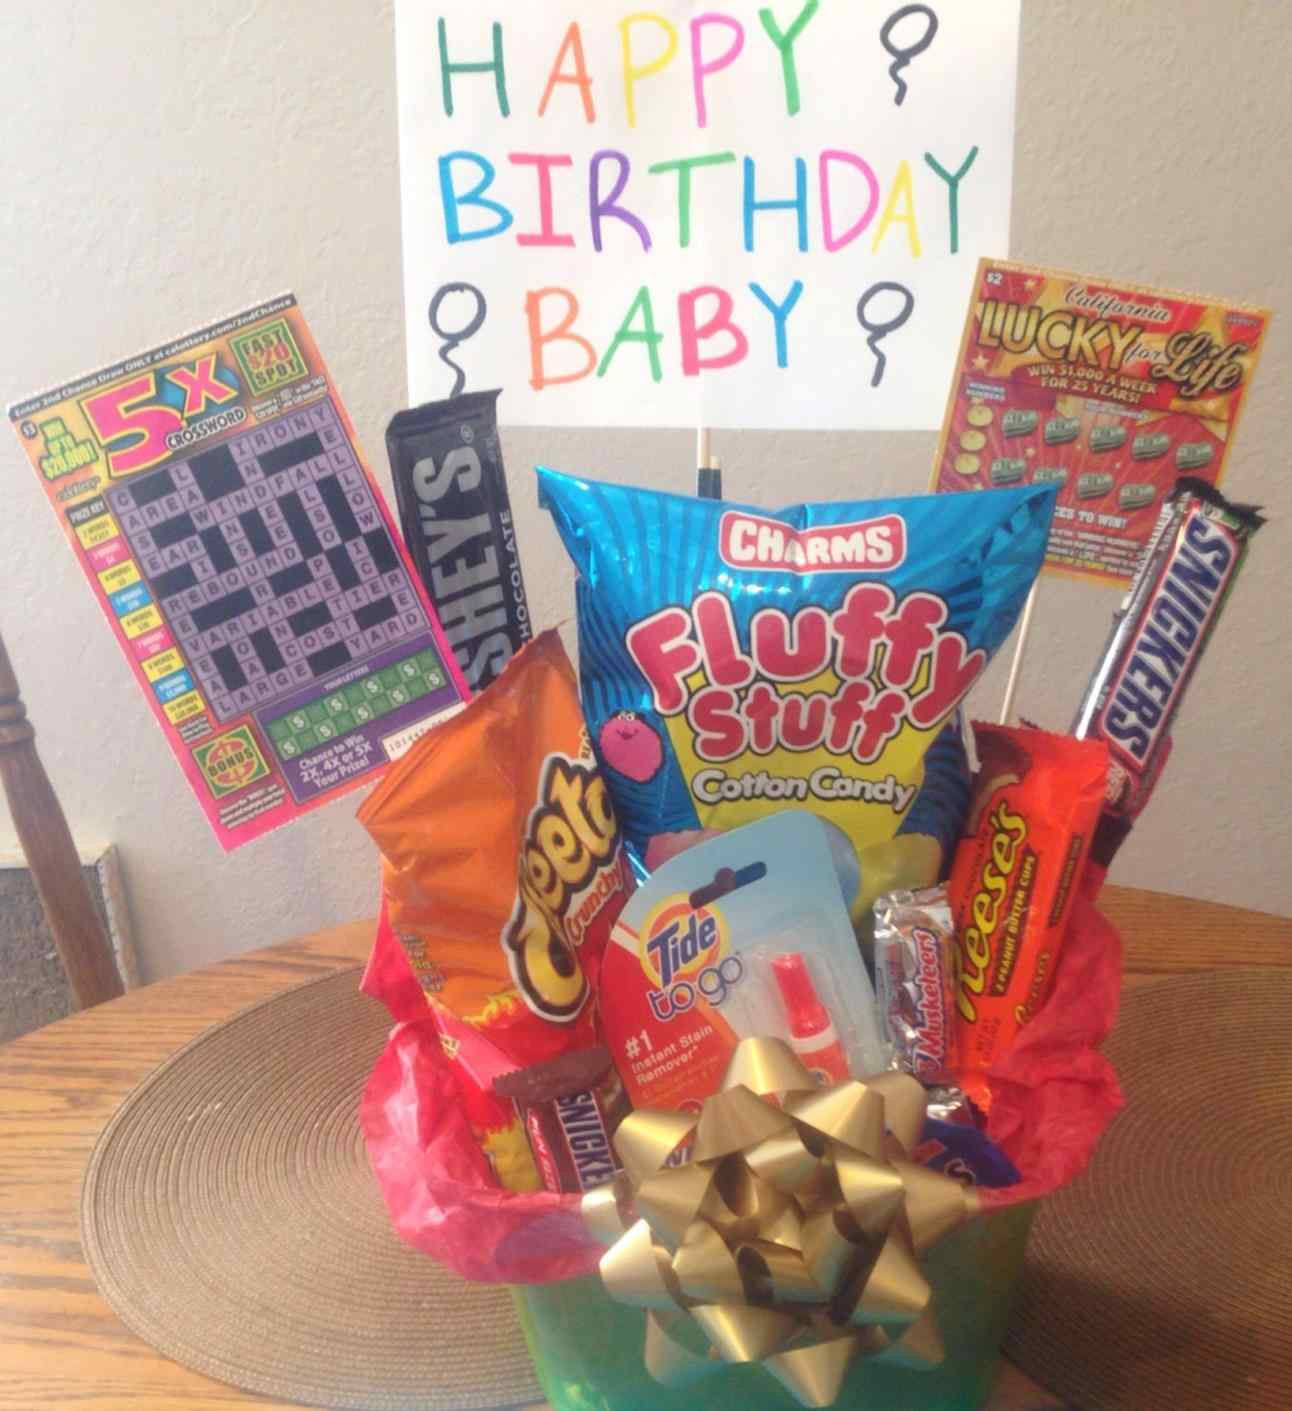 Cute Gift Ideas For Boyfriends Birthday
 Good Birthday Presents For Boyfriend